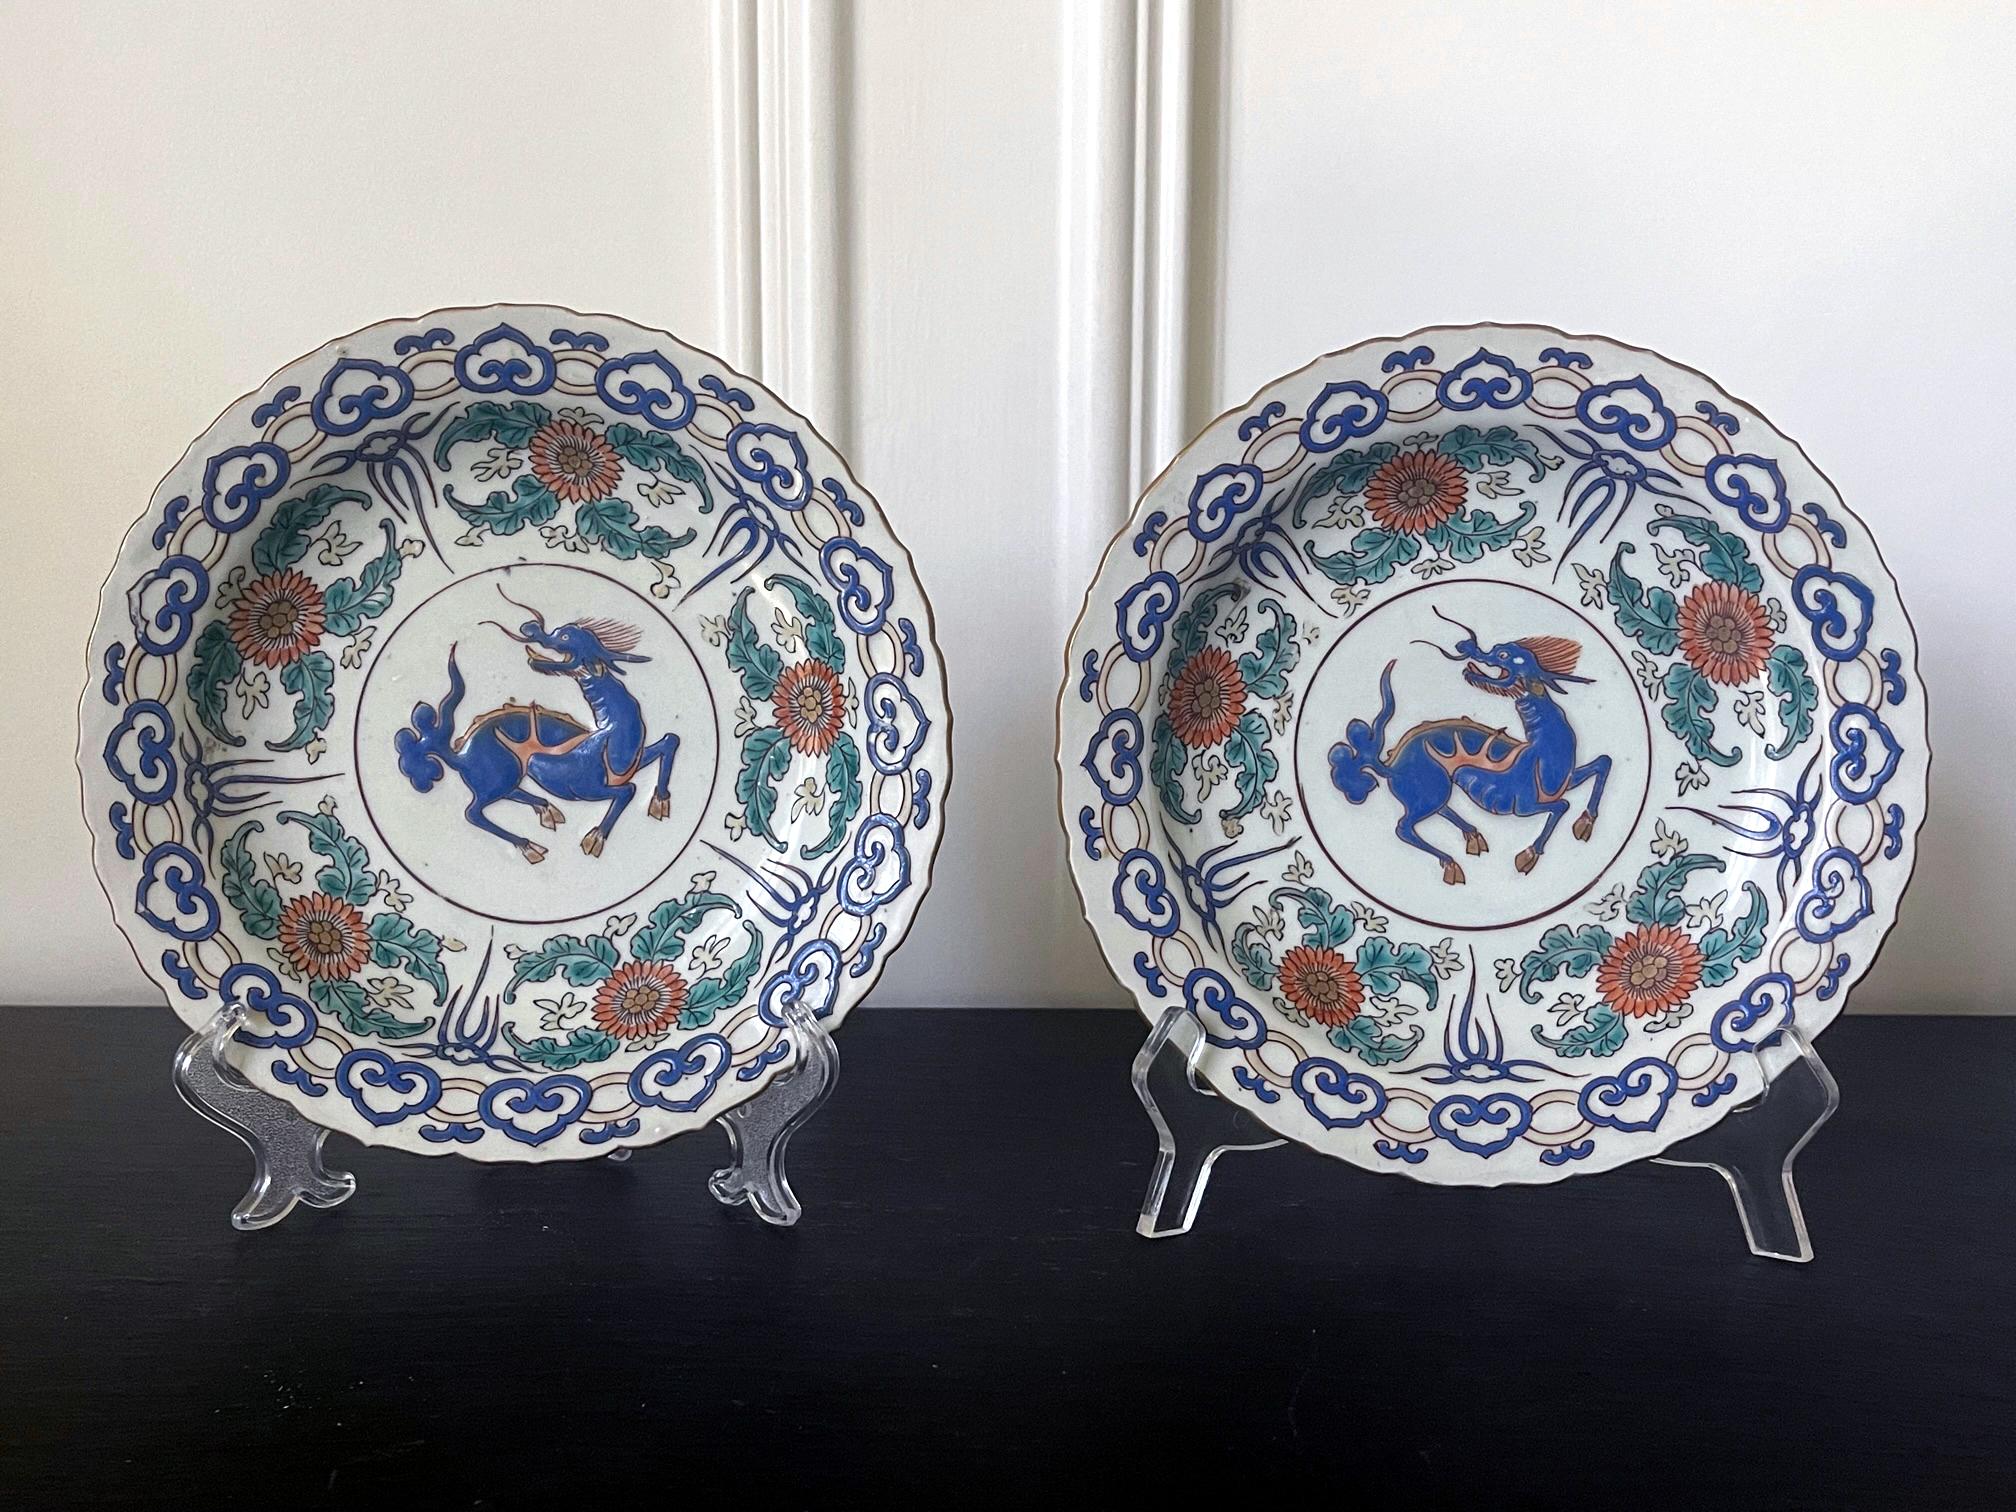 Ein Paar japanische dekorative Keramikteller, die um das 17. bis 18. Jahrhundert in Arita für den Exportmarkt hergestellt wurden. Das ausziehbare Geschirr des Schranks hat einen vergoldeten Rand aus Lotusperlen und ein üppiges dreifarbiges